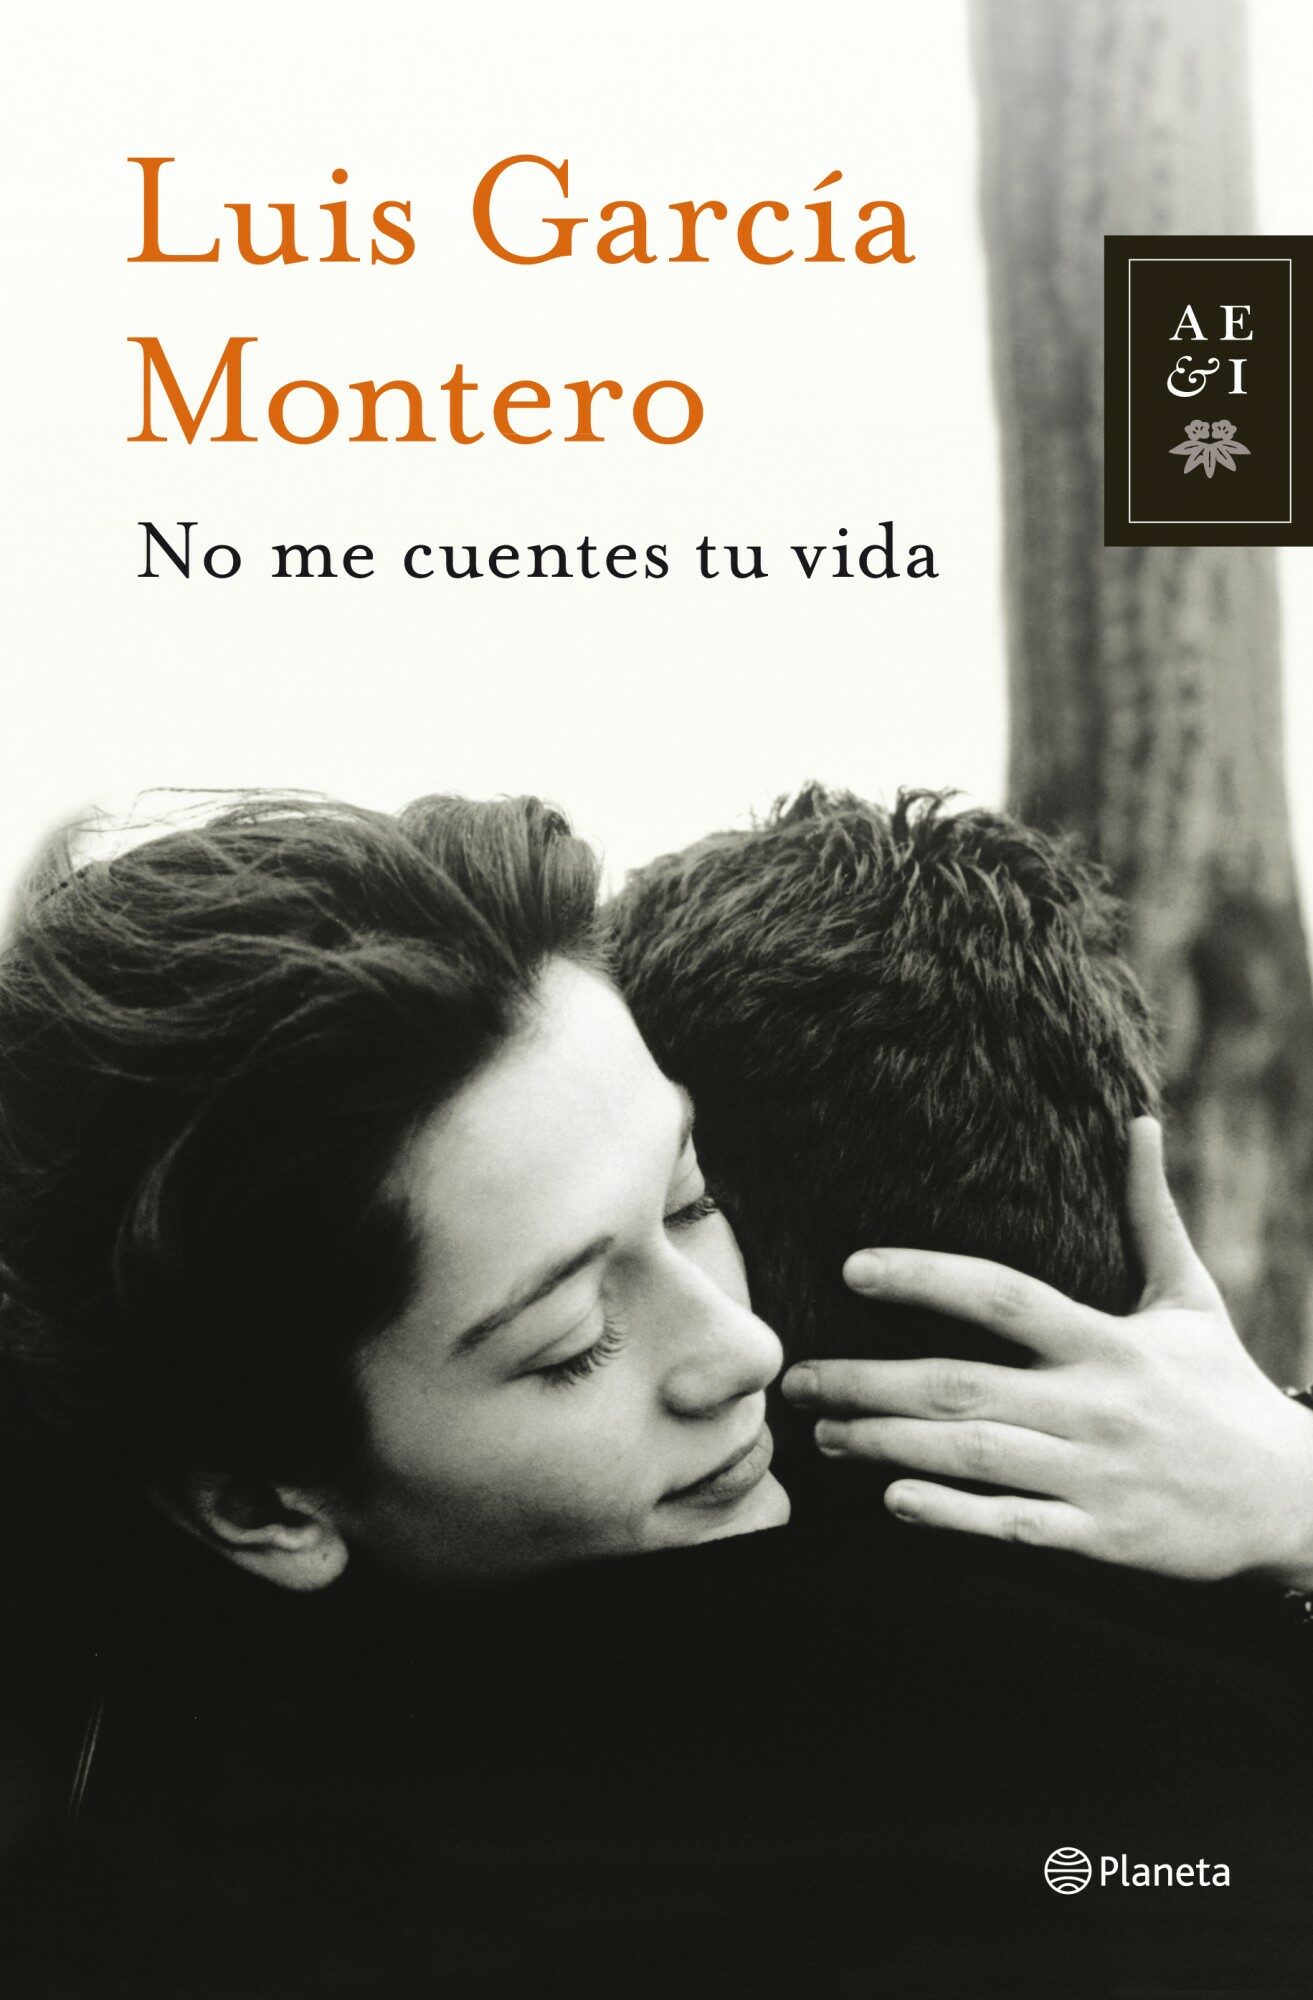 Los mejores libros para el otoño - Luis García Montero - No me cuentes tu vida